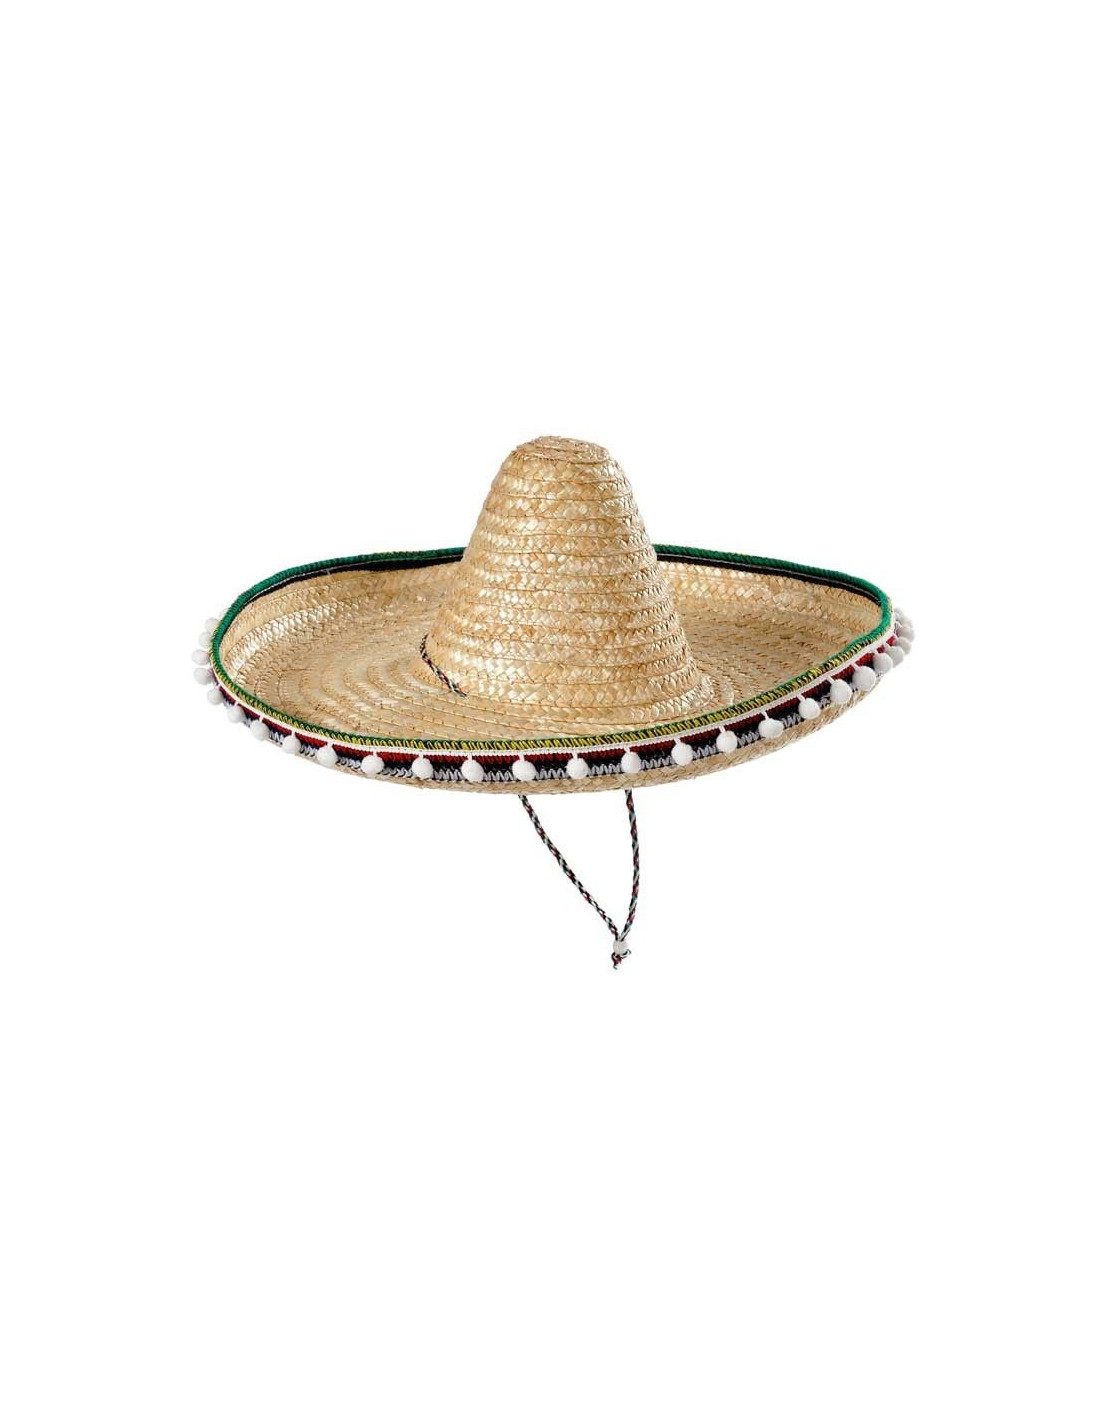 Sombrero de paja 45cm - en Tienda Disfraces Bacanal